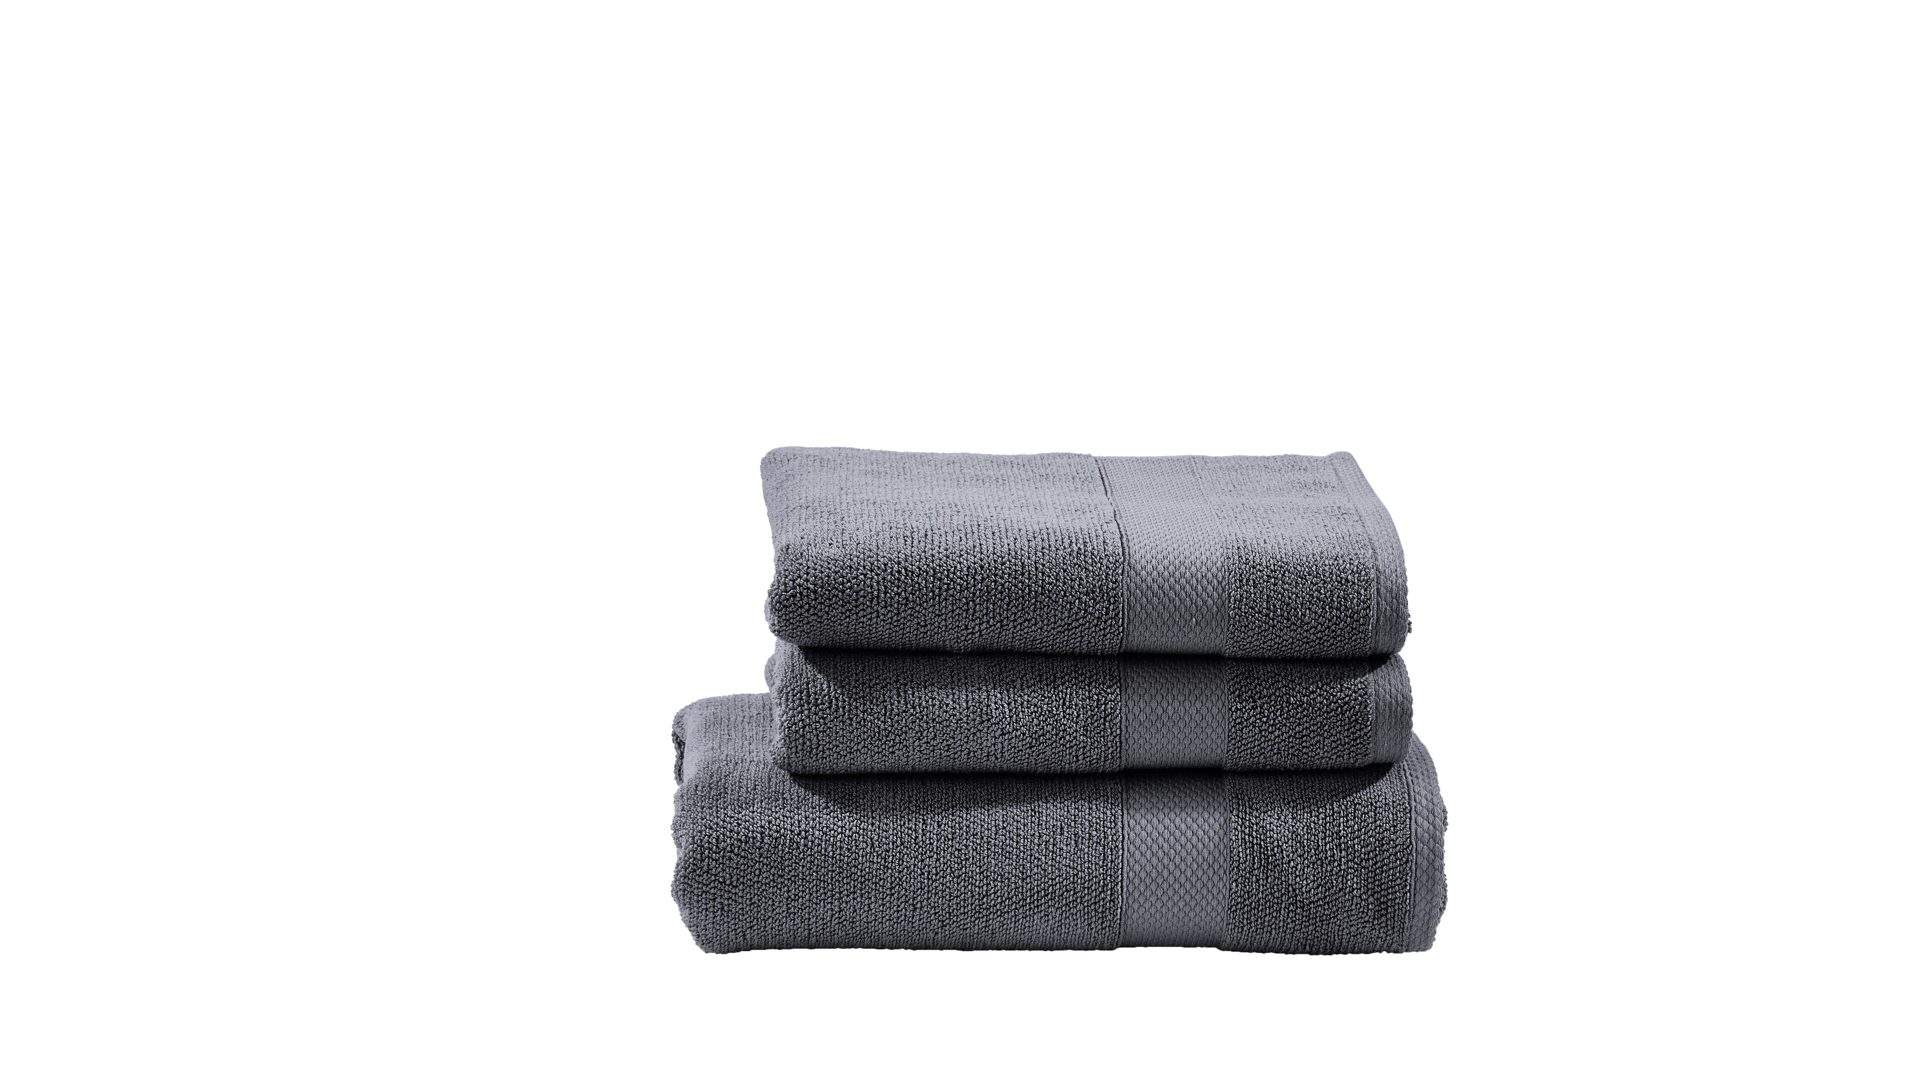 Handtuch-Set Done.® aus Stoff in Anthrazit done.® Handtuch-Set Deluxe anthrazitfarbene Baumwolle  – dreiteilig